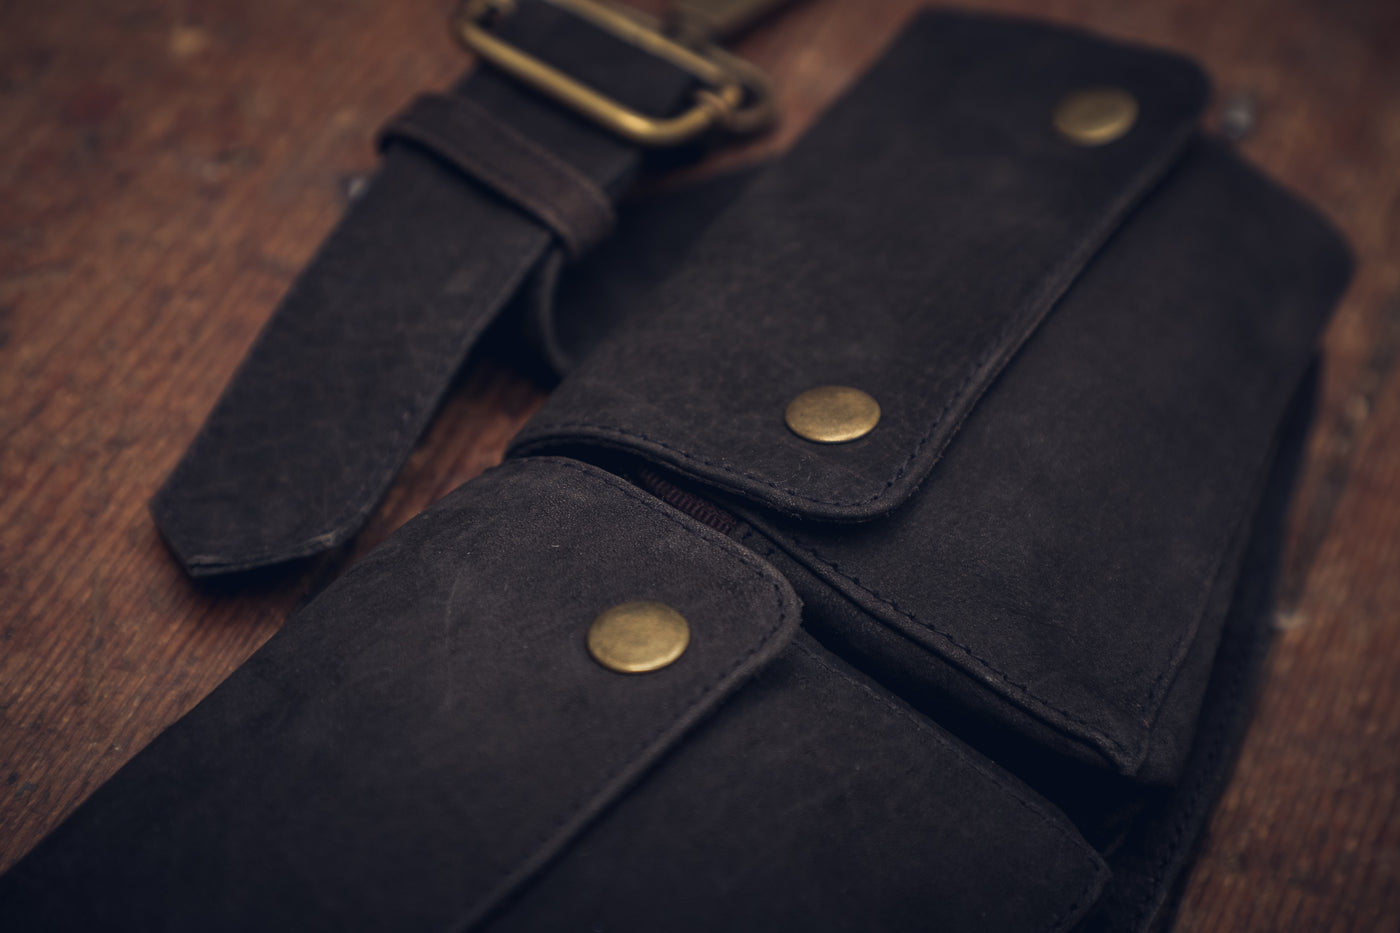 Leather Hipster Belt - ForageDesign